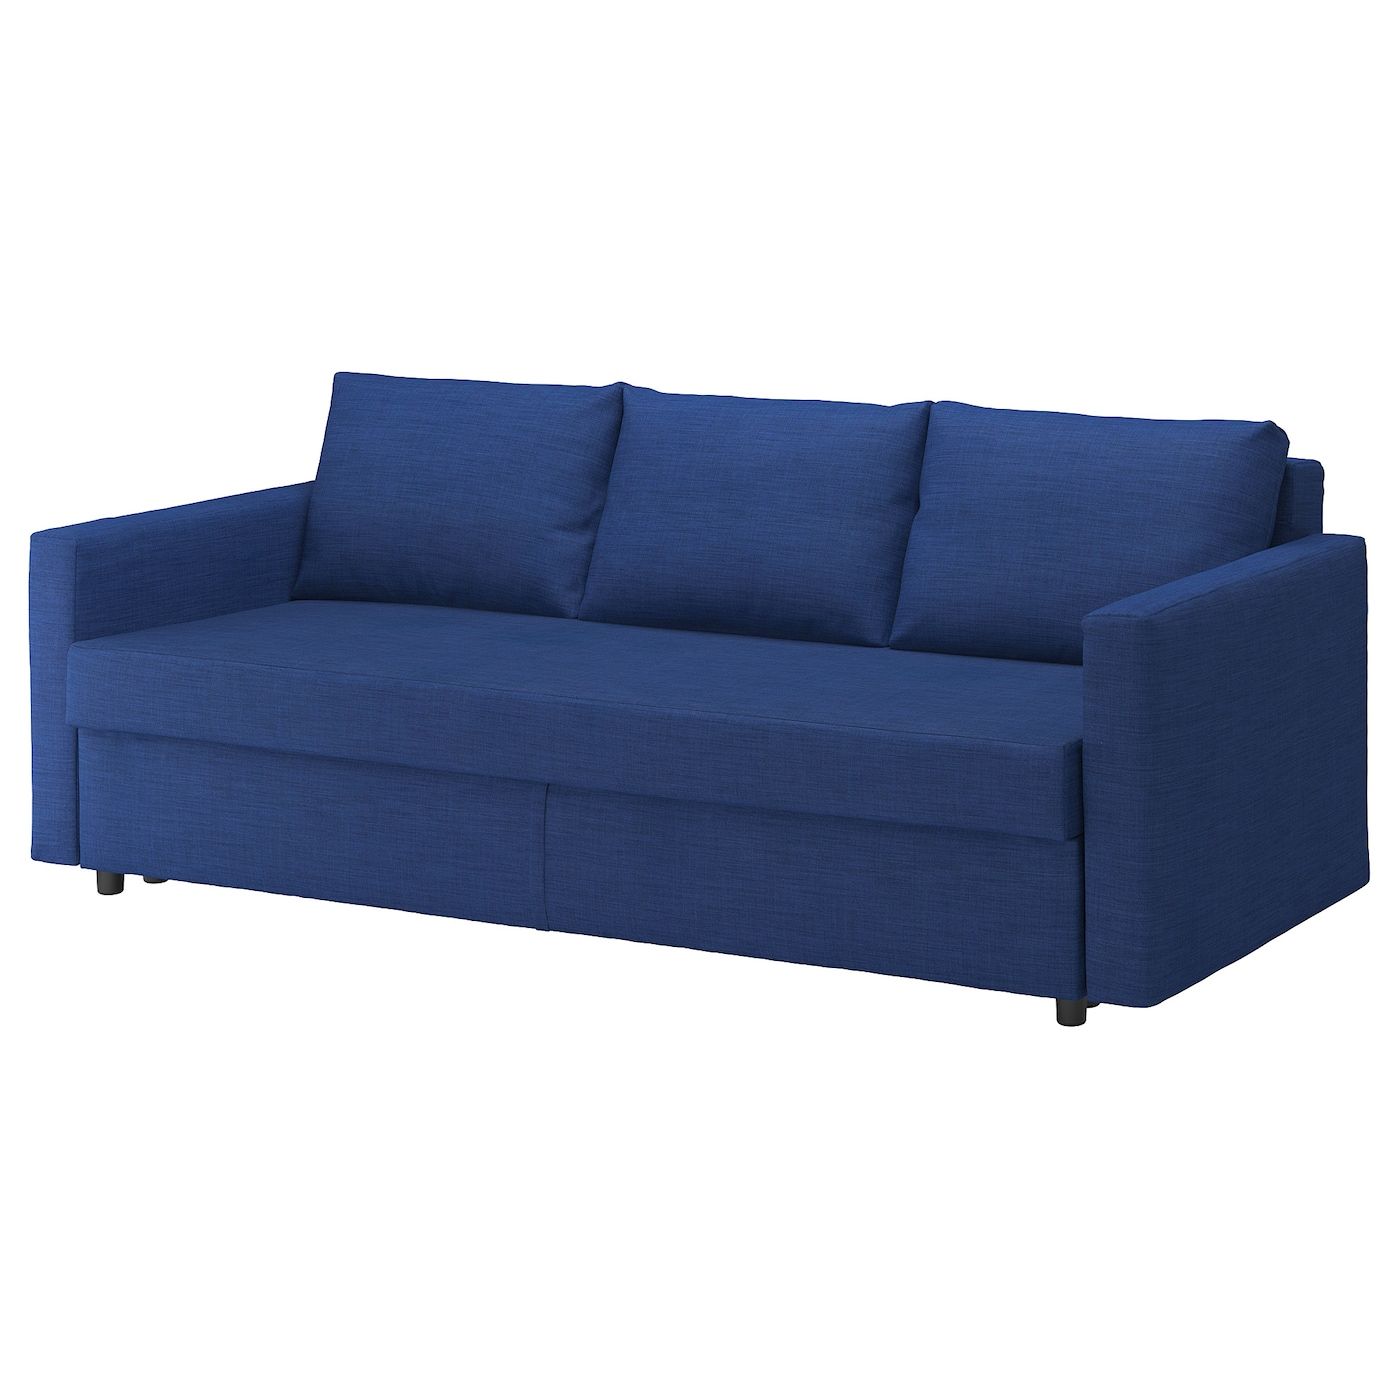 Friheten Sleeper Sofa, Skiftebo Blue – Ikea Intended For Sofas In Blue (View 10 of 15)